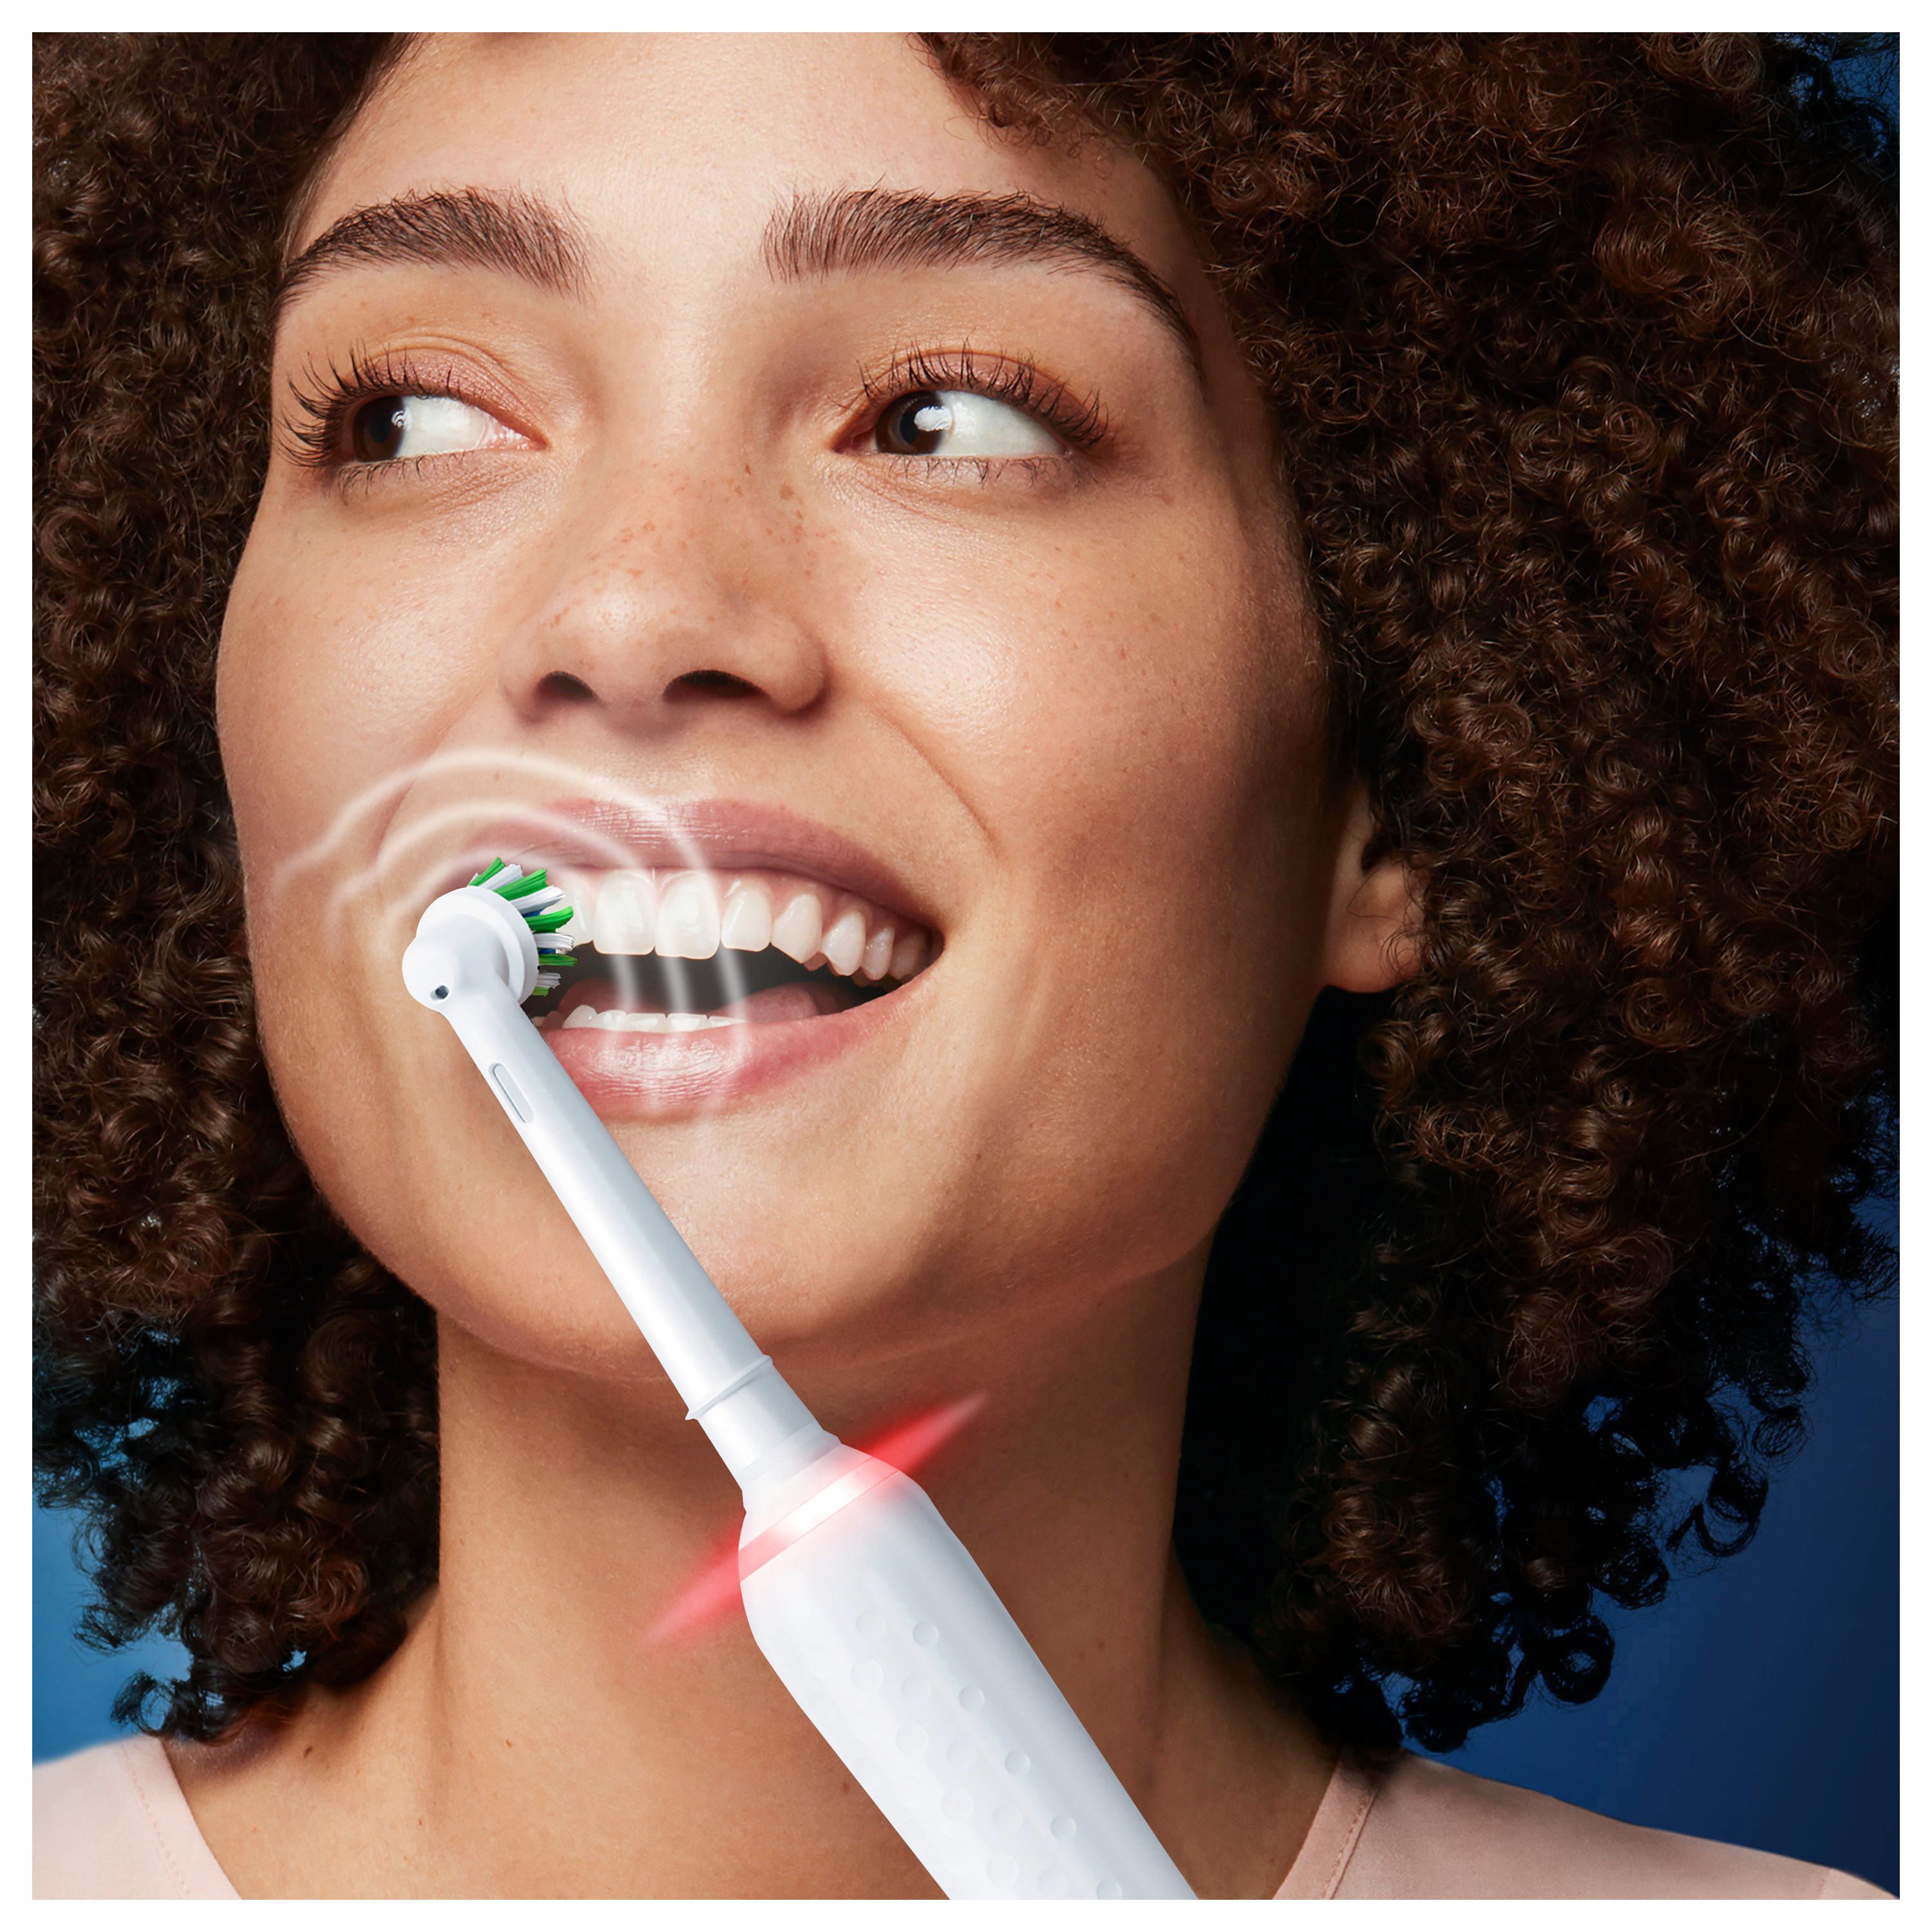 Oral-B - Elektrische Zahnbürste "Pro 3  - Sensitive Clean" in White